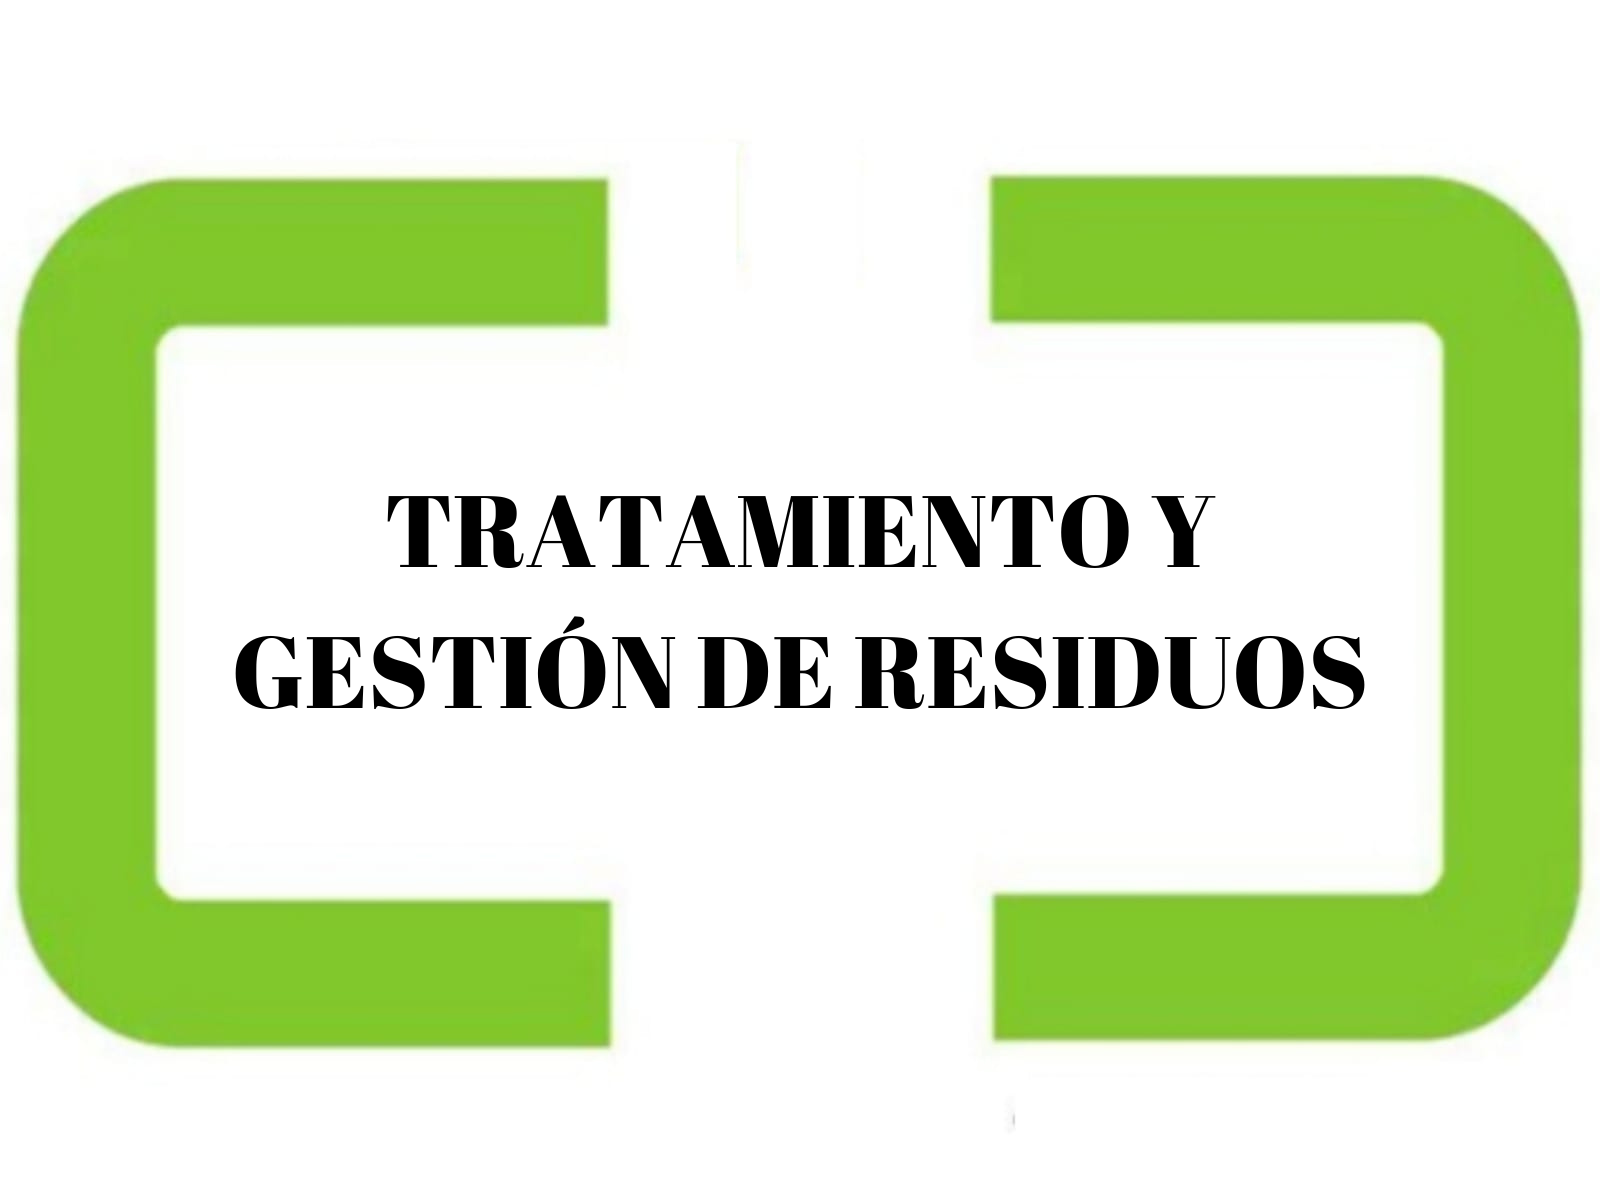 TRATAMIENTO Y GESTIÓN DE RESIDUOS